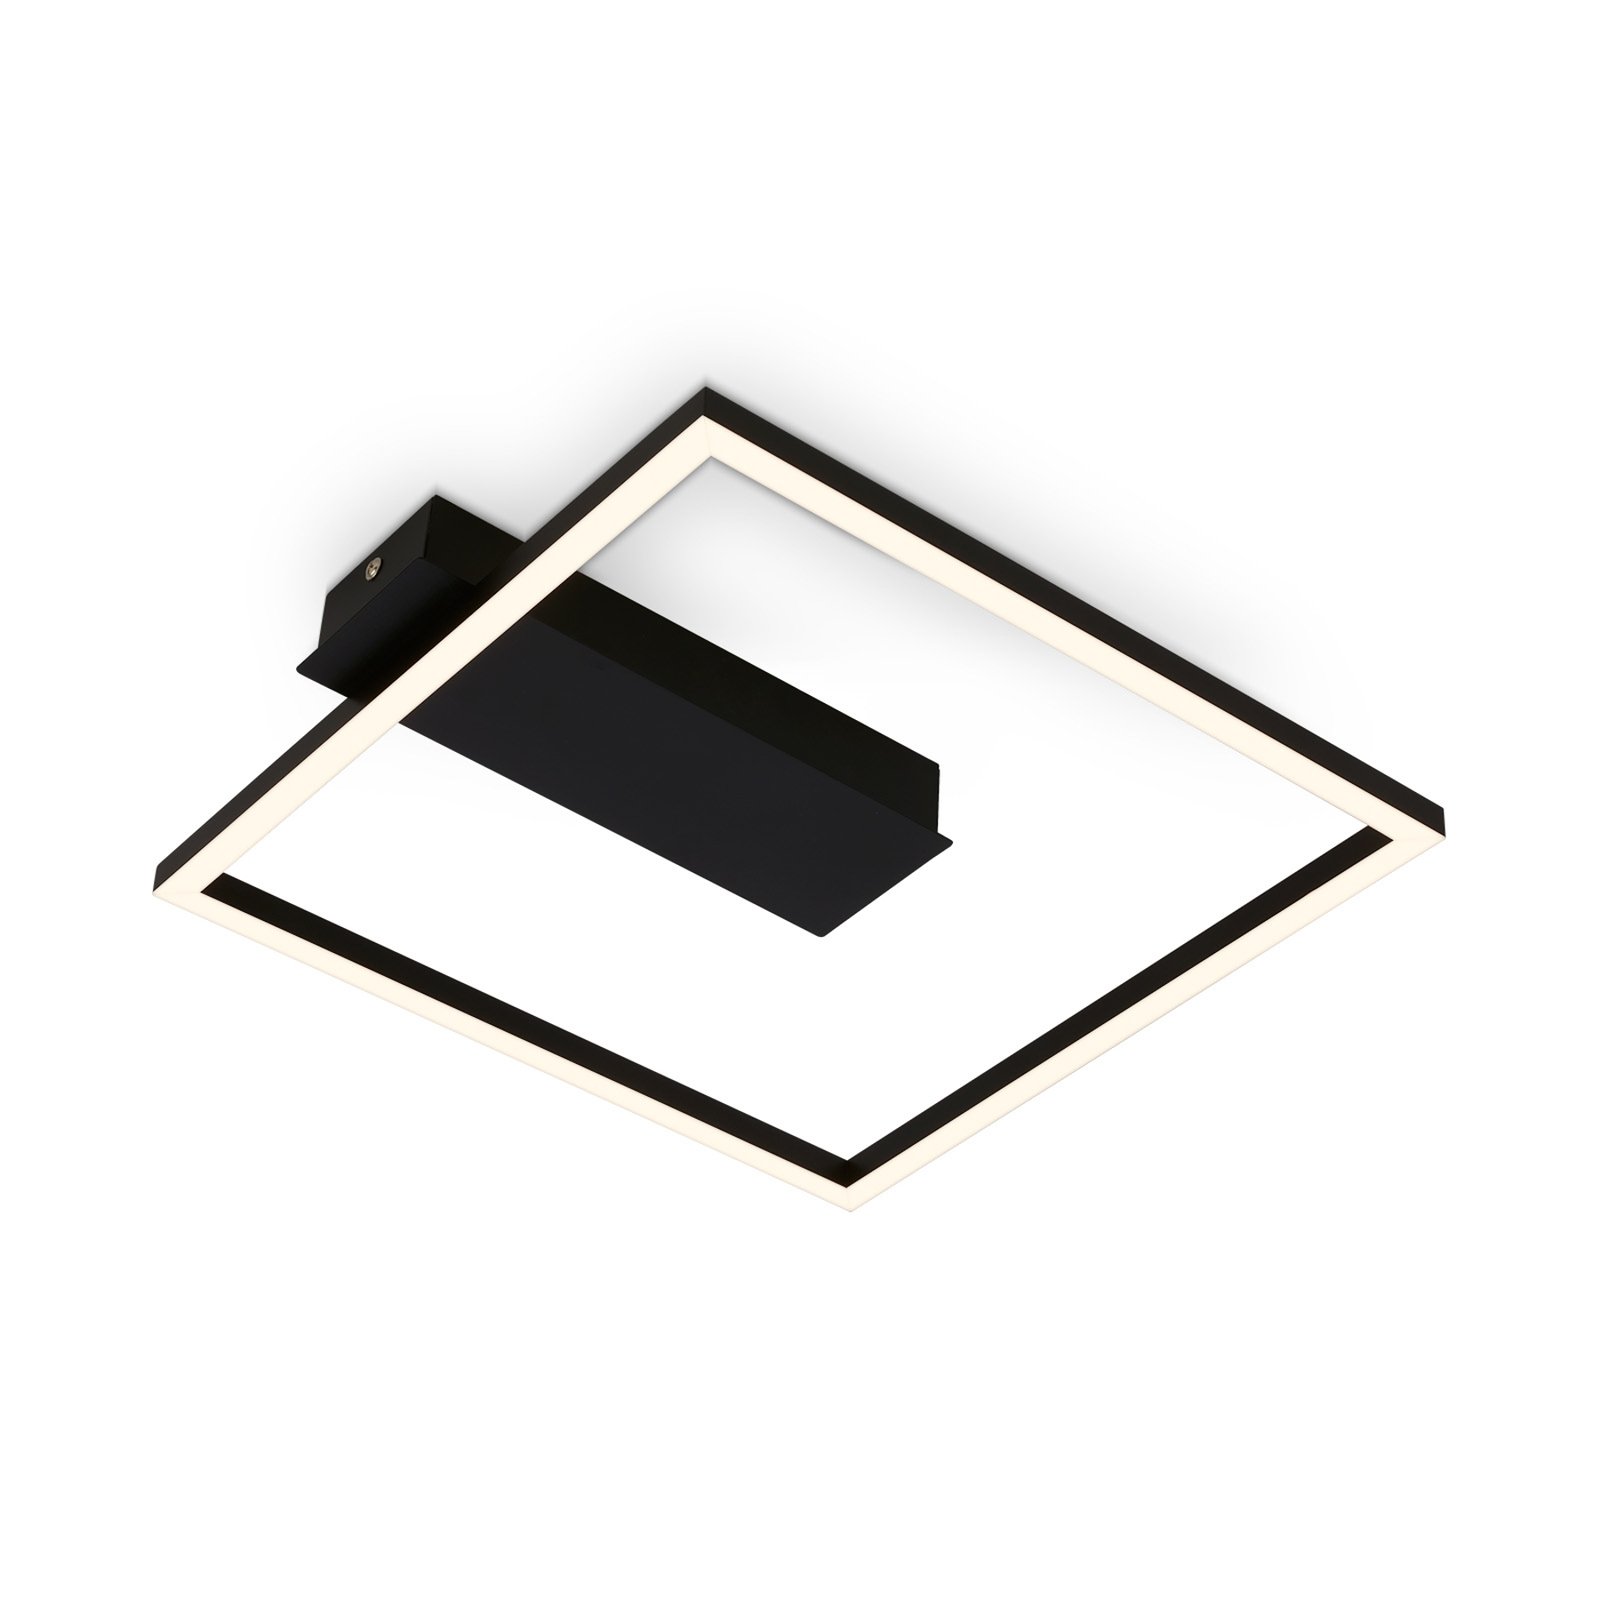 3771 LED ceiling light in a frame shape, black